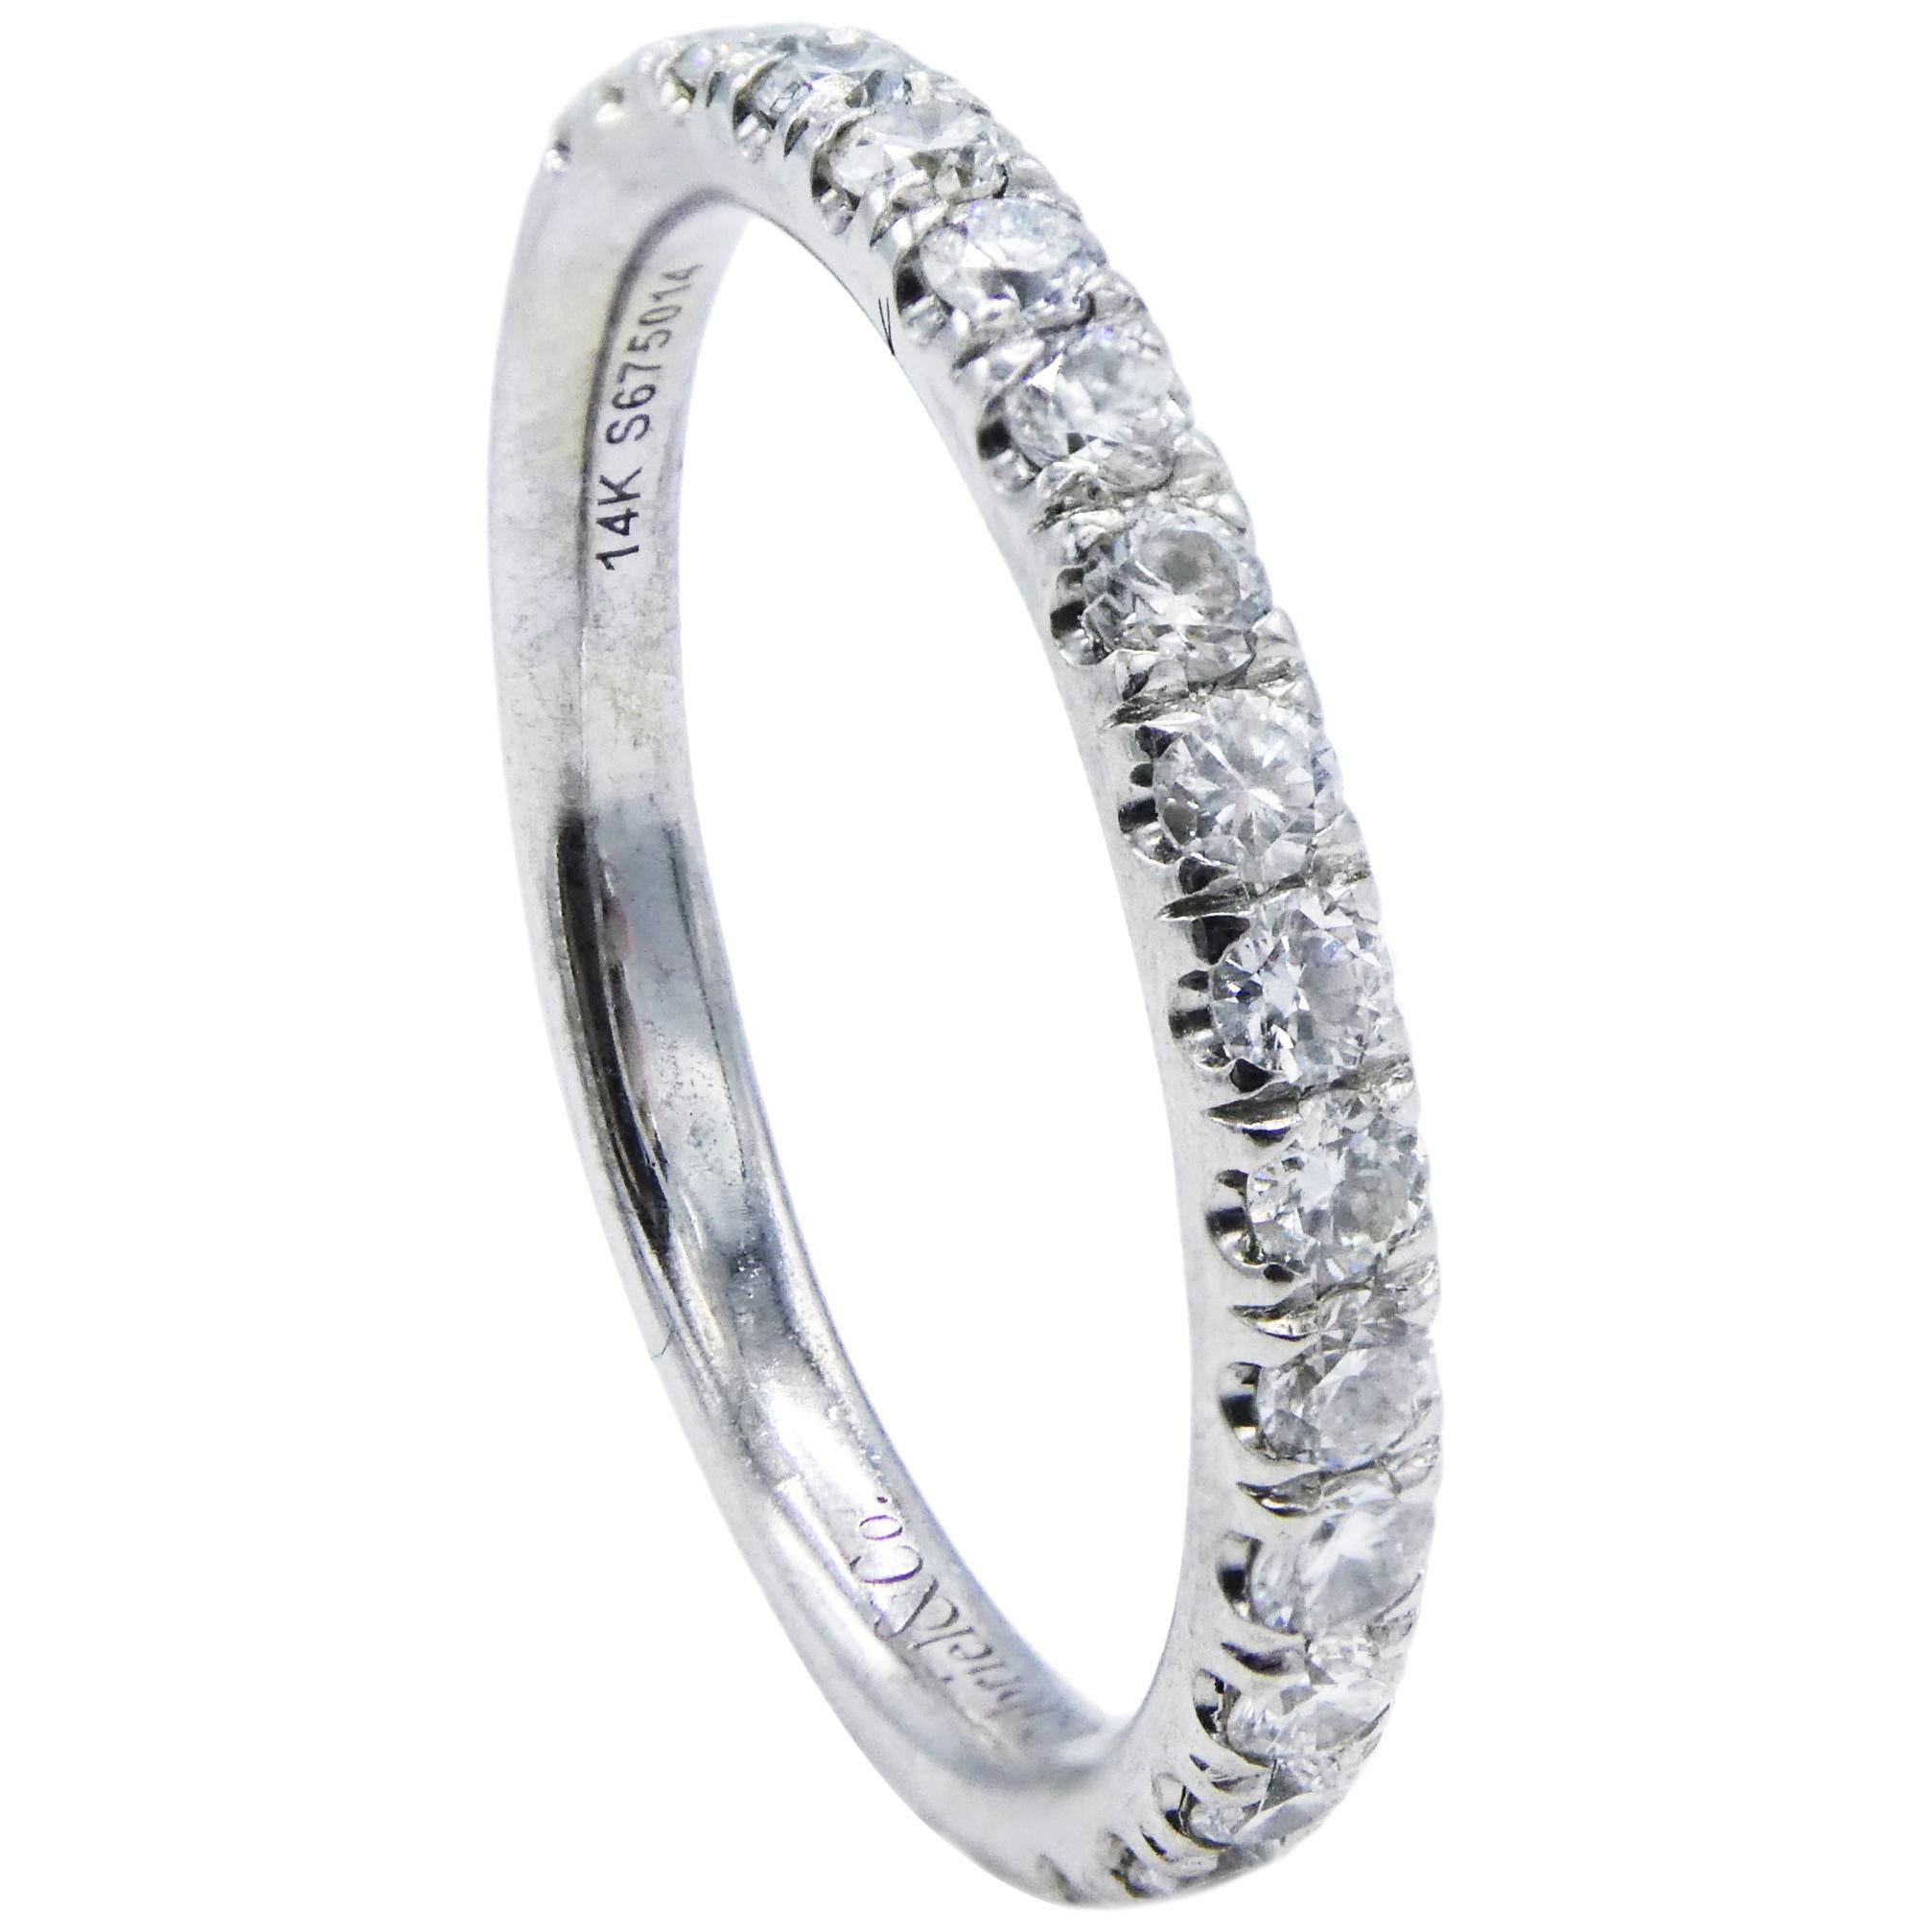 Gabriel & Co. 14 Karat Diamond Wedding Band 0.50 Carat White Gold Half Ring